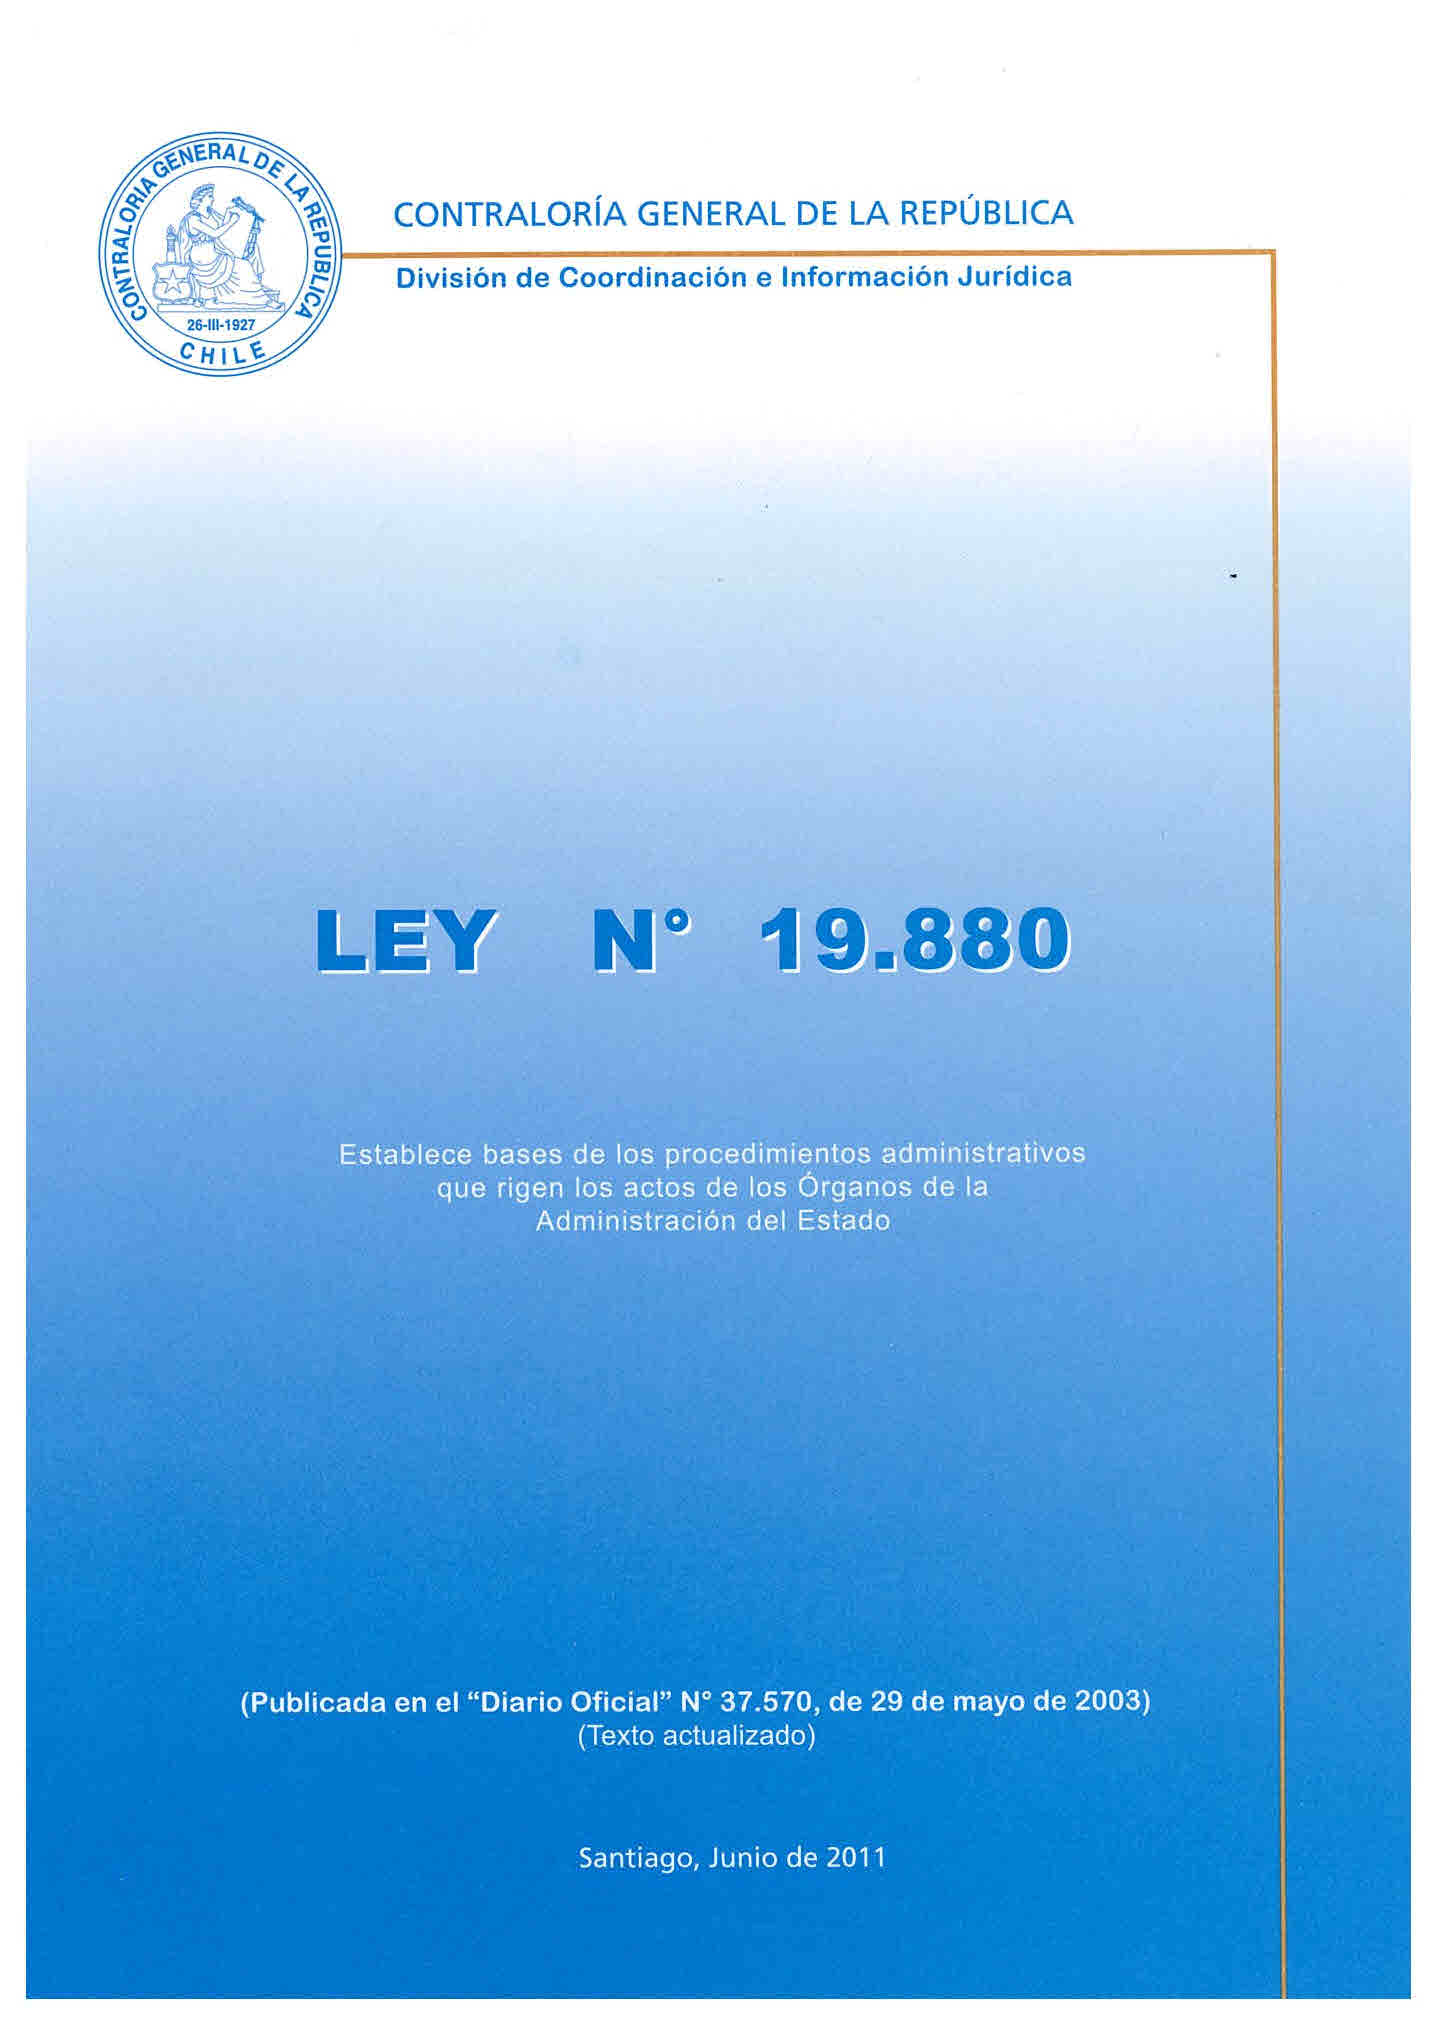 Ley N°19.886 Ley de bases sobre contratos administrativos de suministro y prestación de servicios. Diario oficial N°37.622, de 30 de junio de 2003